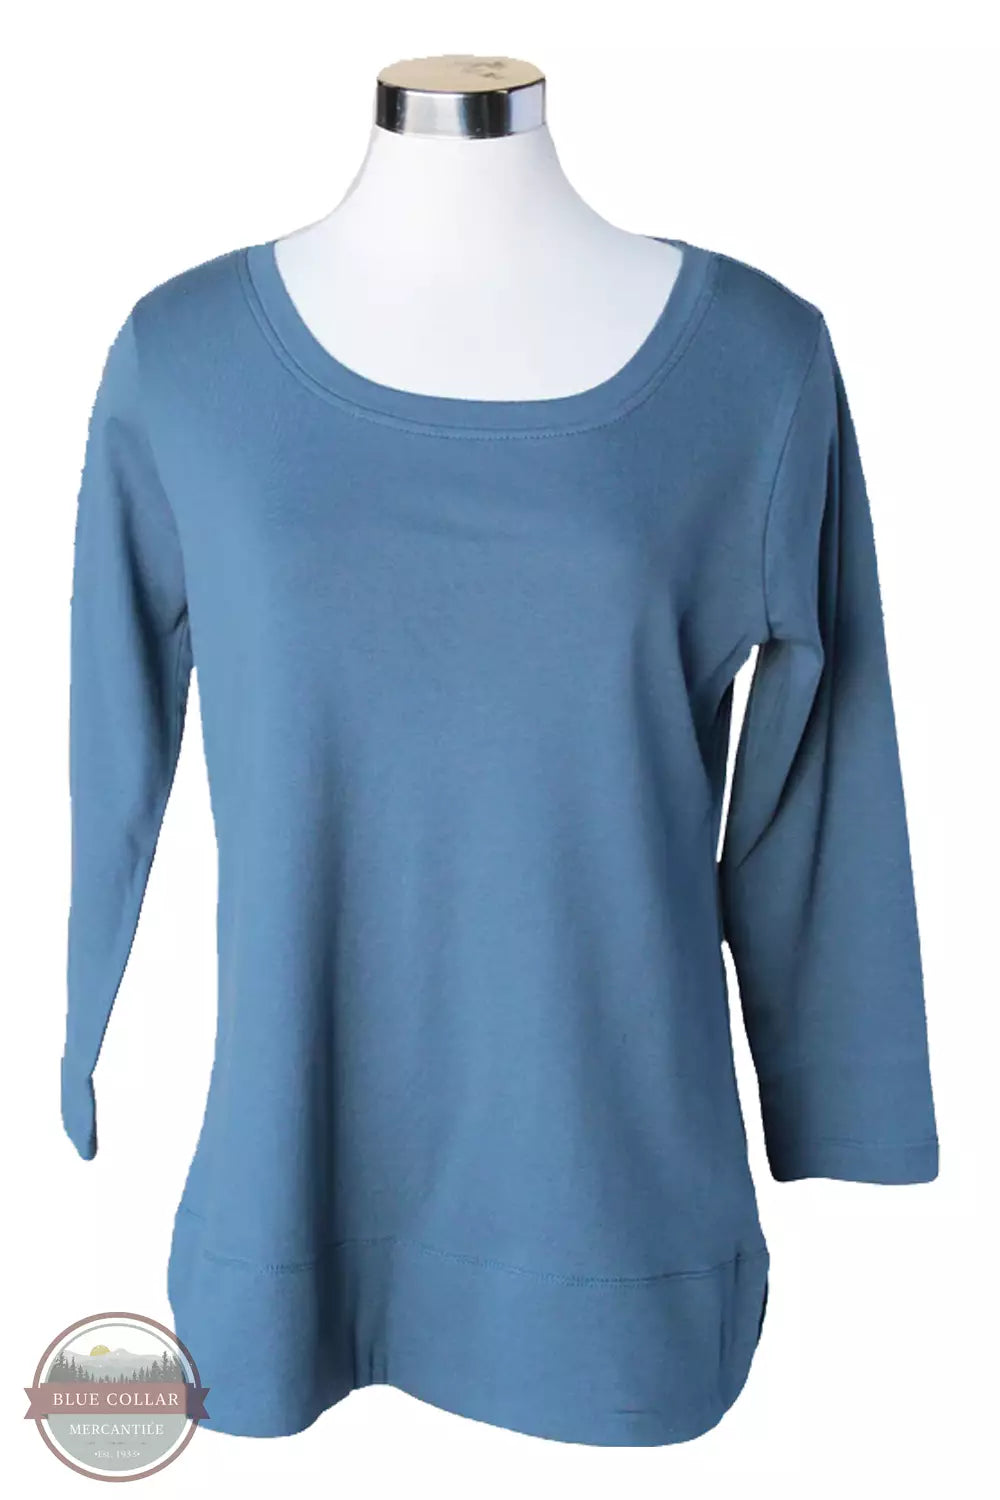 Keren Hart 155 3/4 Sleeve Scoop Neck Shirt Steel Blue Front View